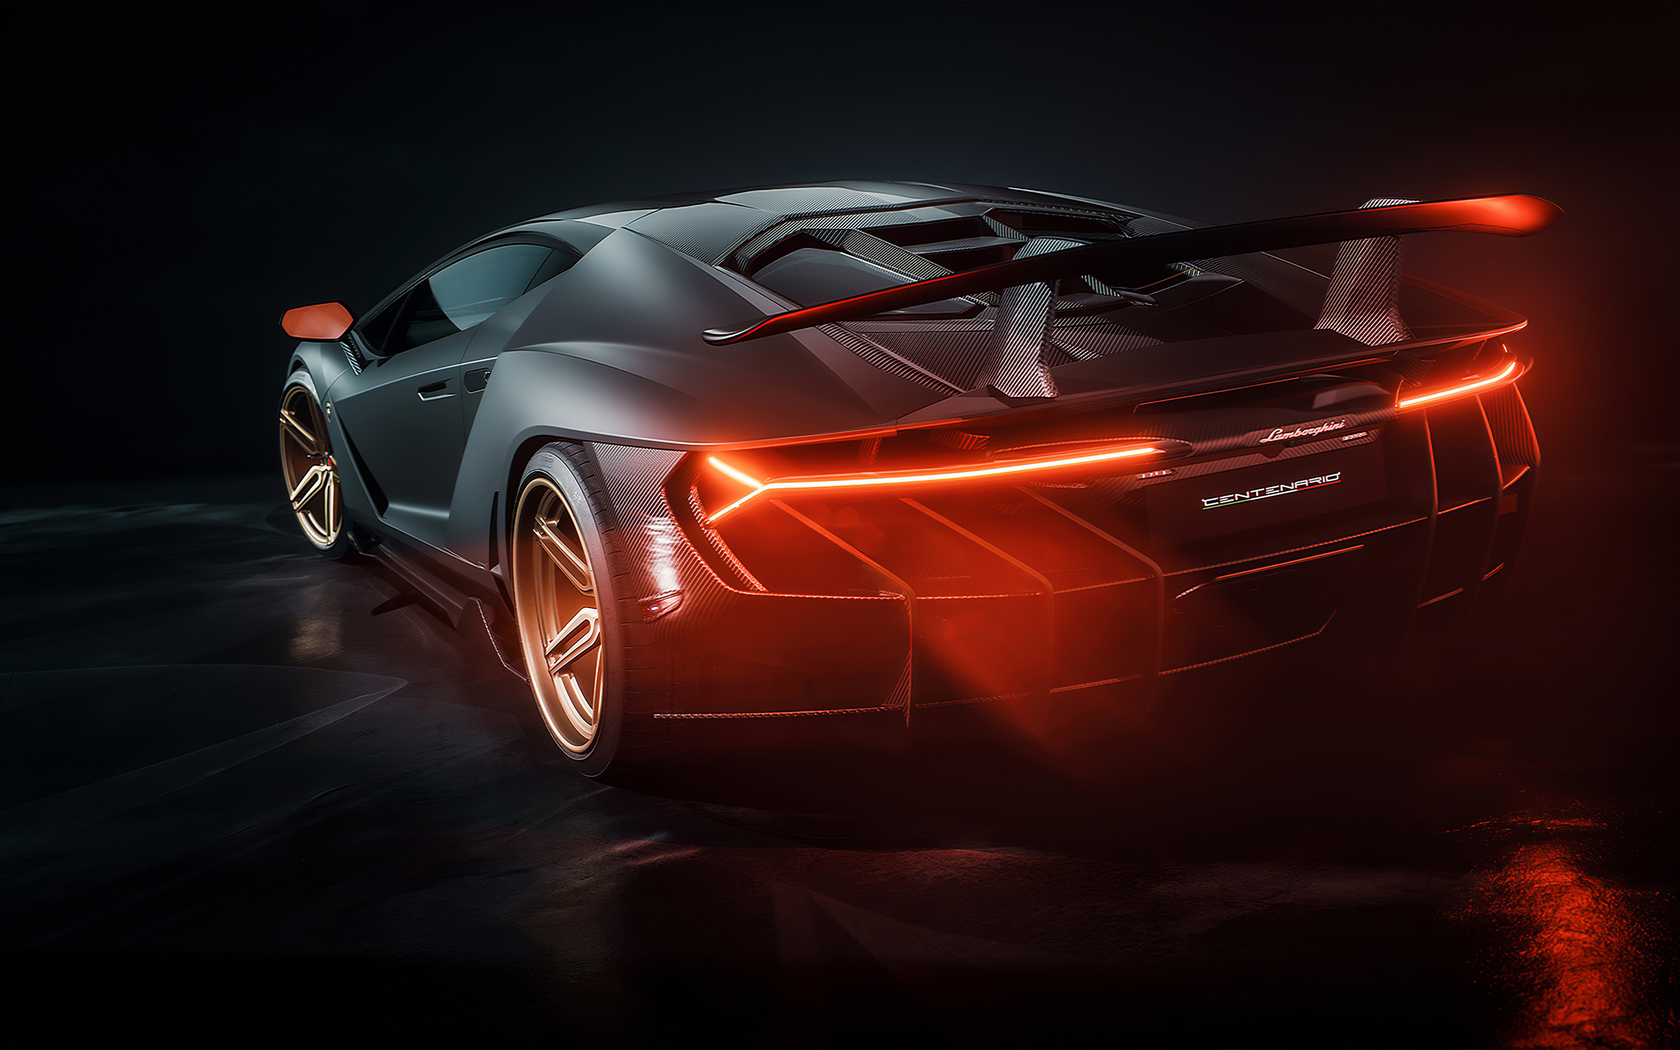 Lamborghini Centenario Car Rear 1680x1050 Resolution HD 4k Wallpaper, Image, Background, Photo and Picture